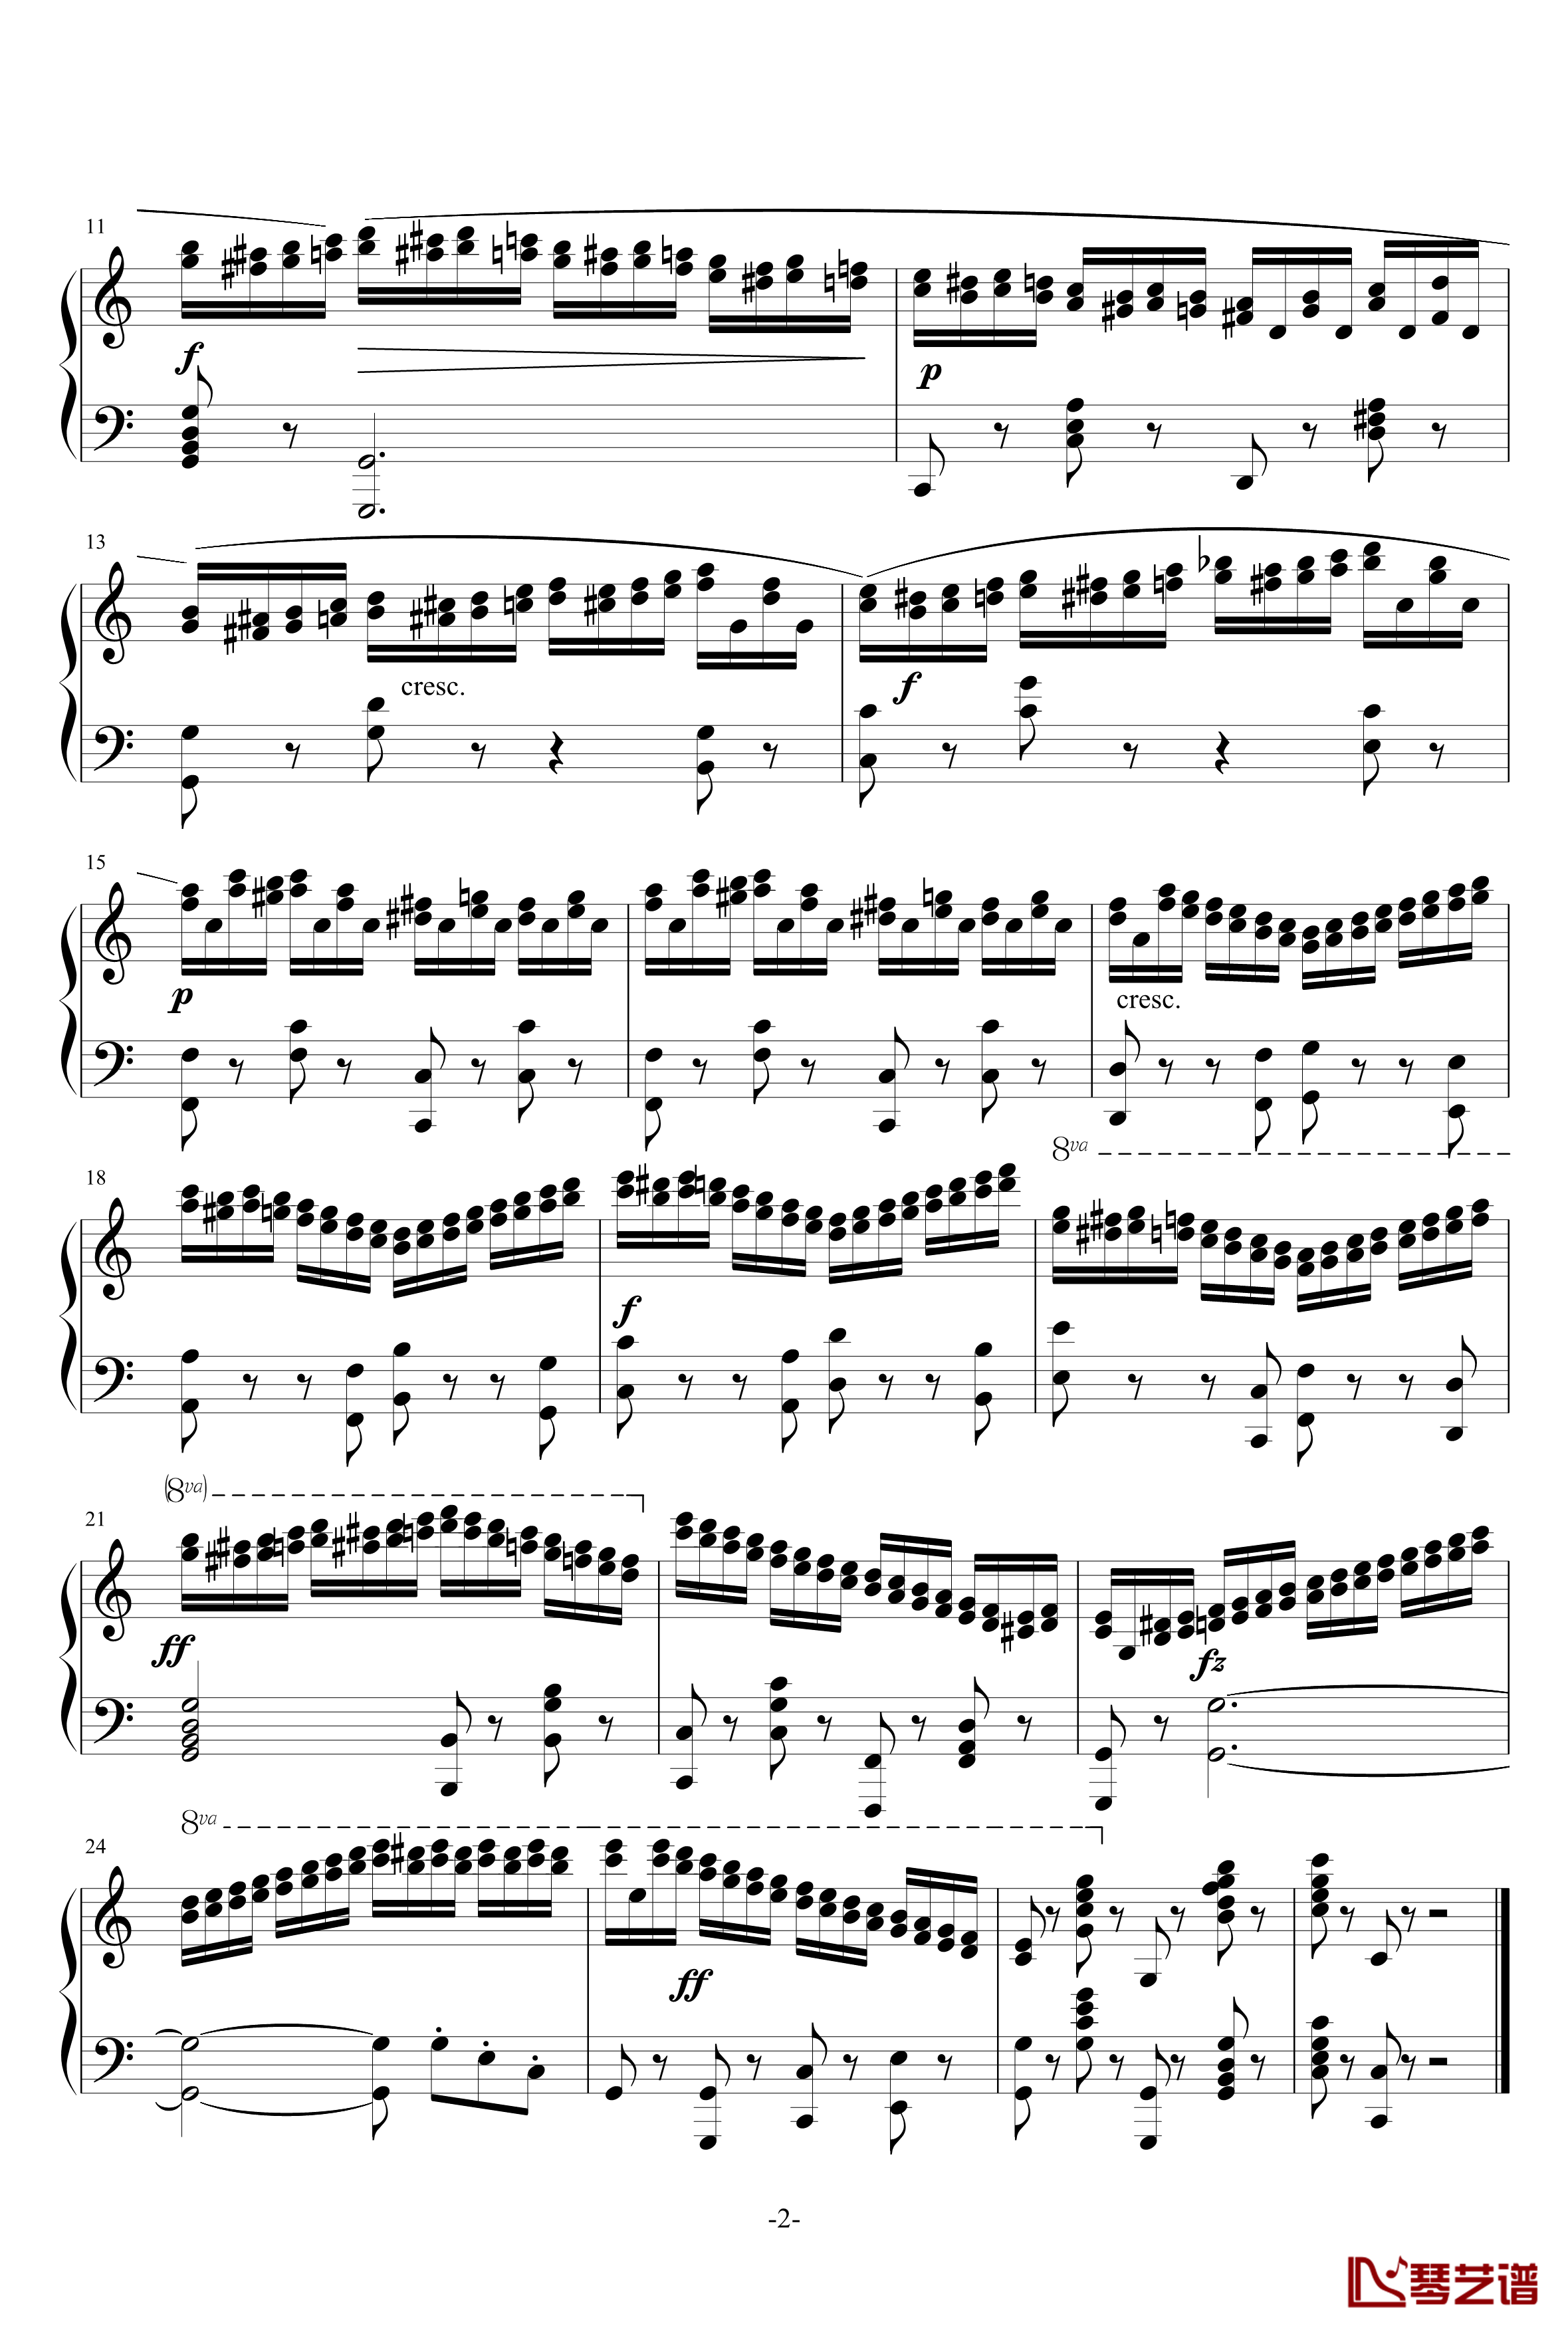 练习曲740第10首钢琴谱-车尔尼-Czerny2